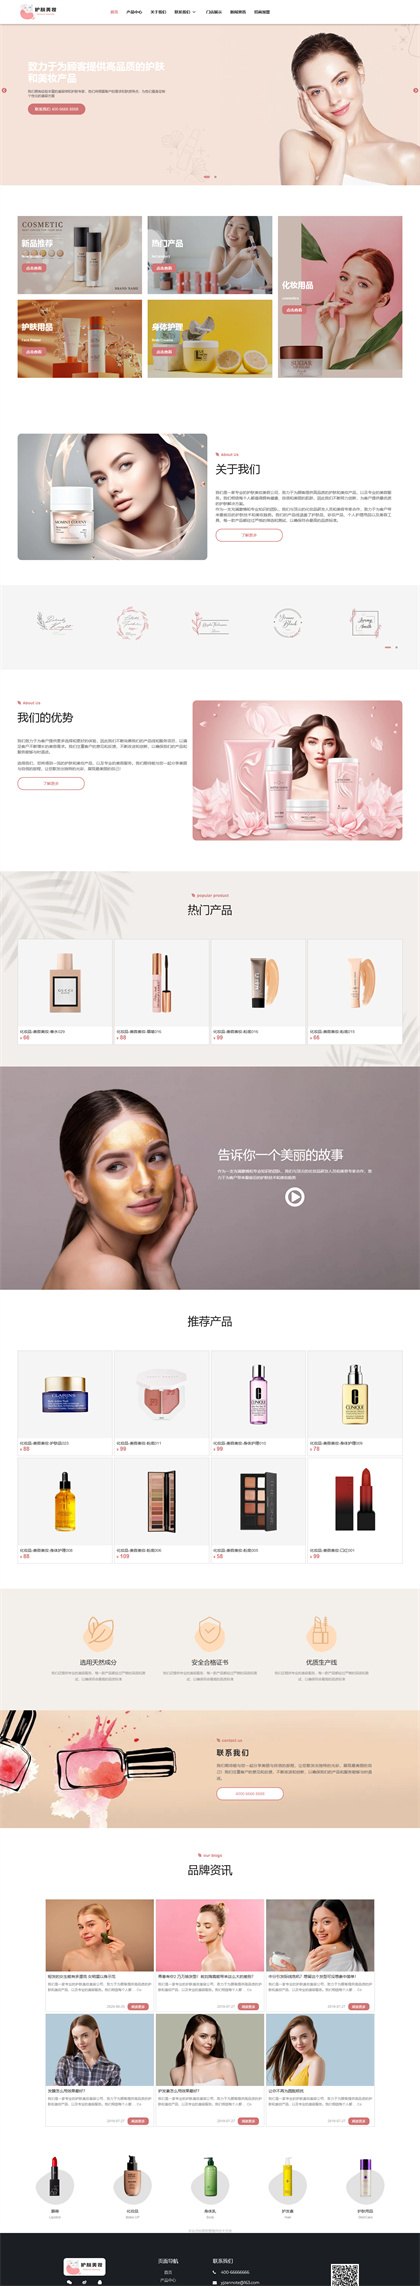 美容护肤-化妆品-护肤品-美妆公司-网站模板-网站模板网站模板图片